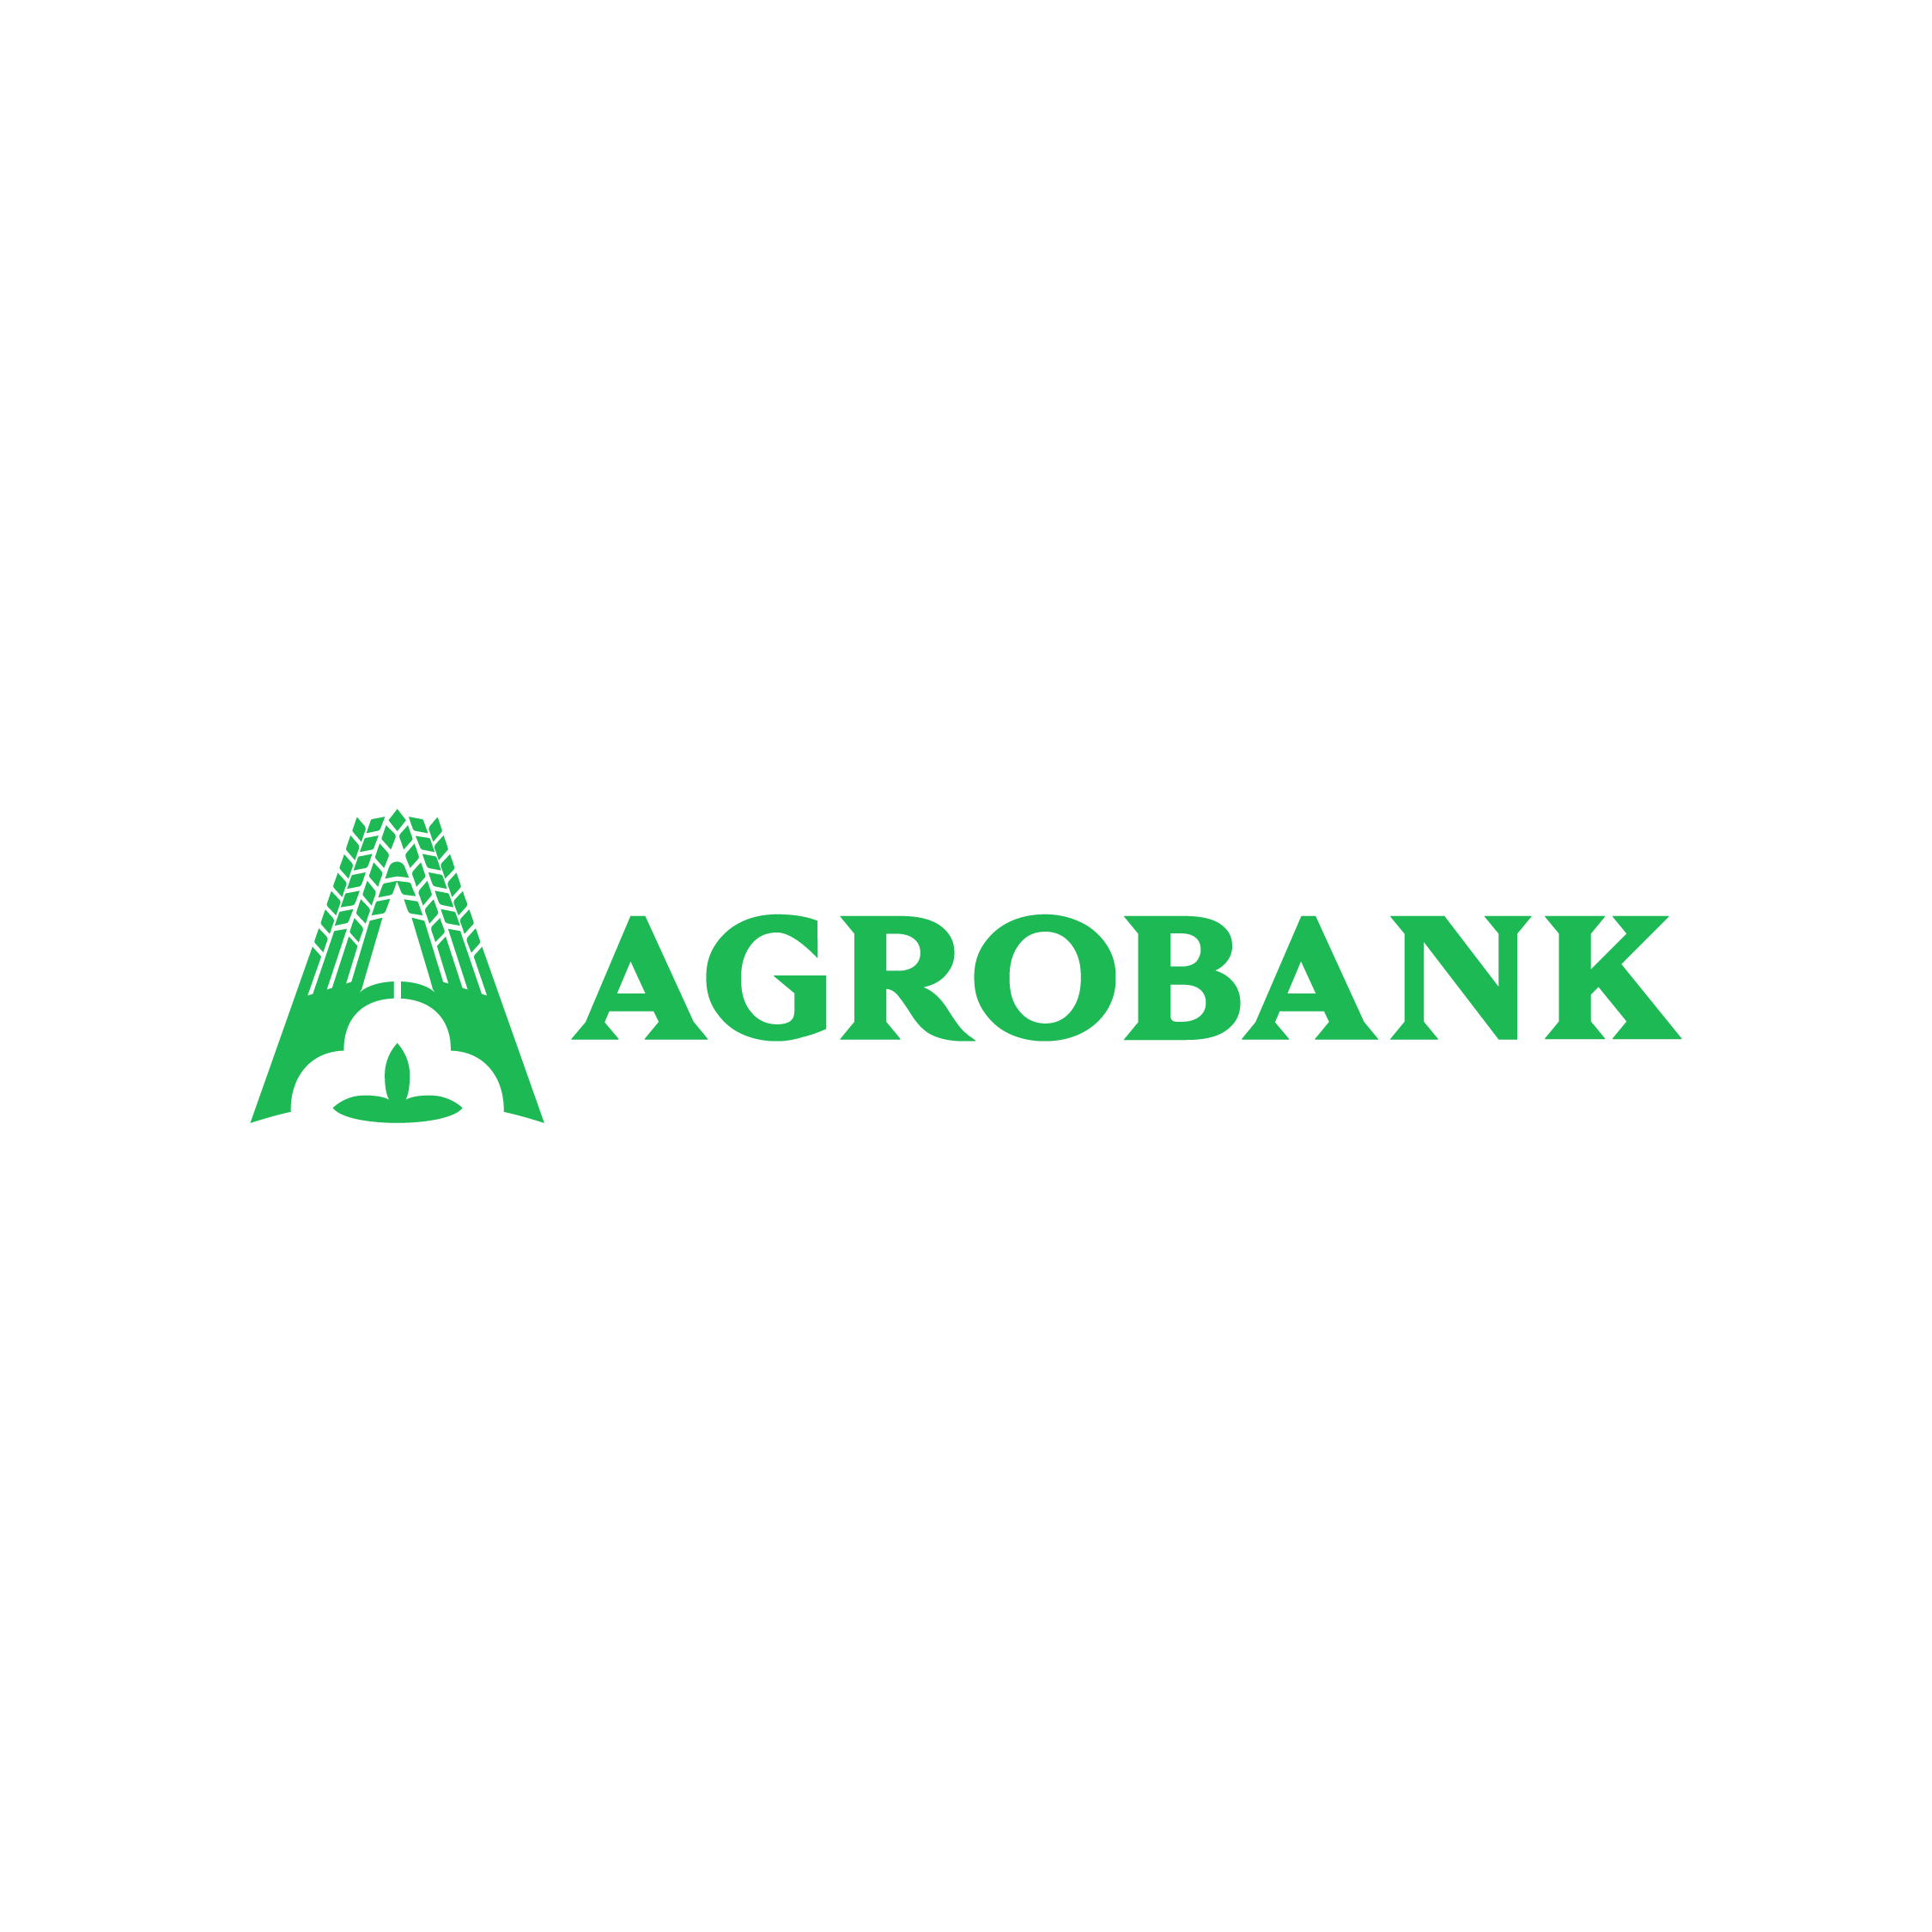 Агробанк логотип. Агробанк Узбекистан. Агробанк Узбекистан лого. Агра банк.